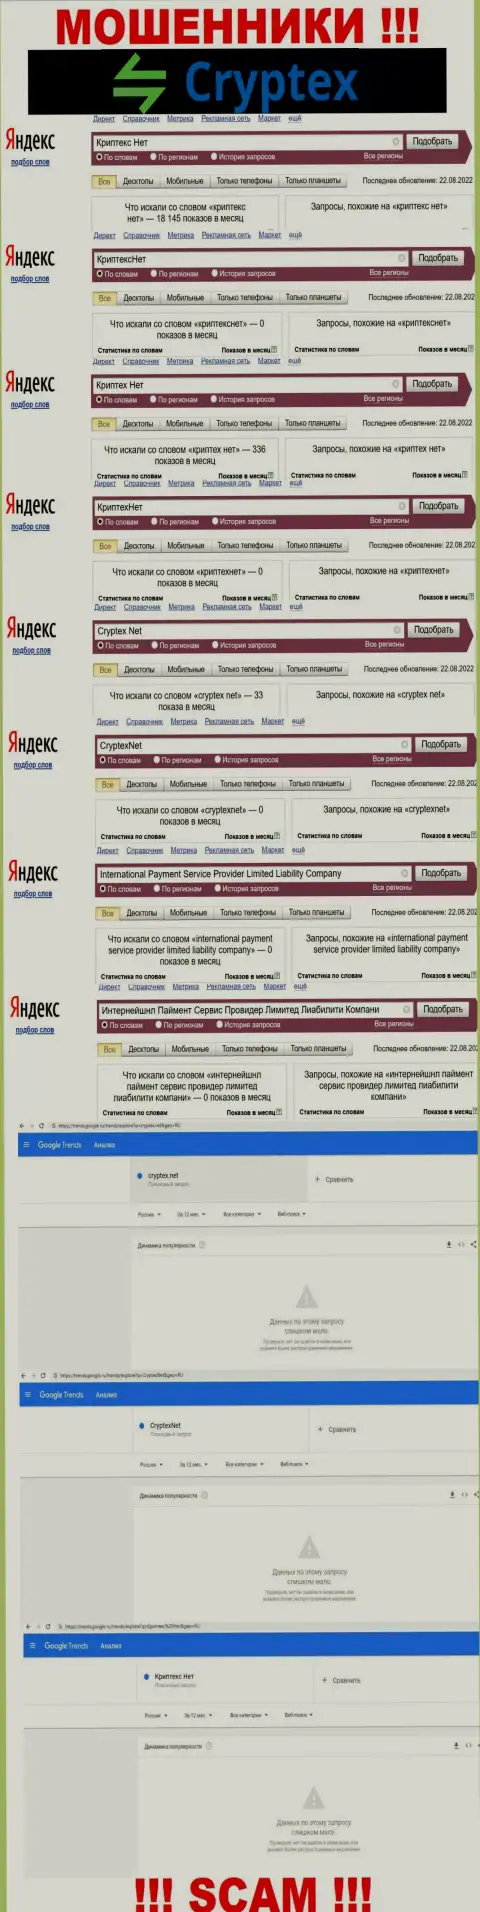 Скриншот итога онлайн-запросов по противозаконно действующей компании КриптехНет